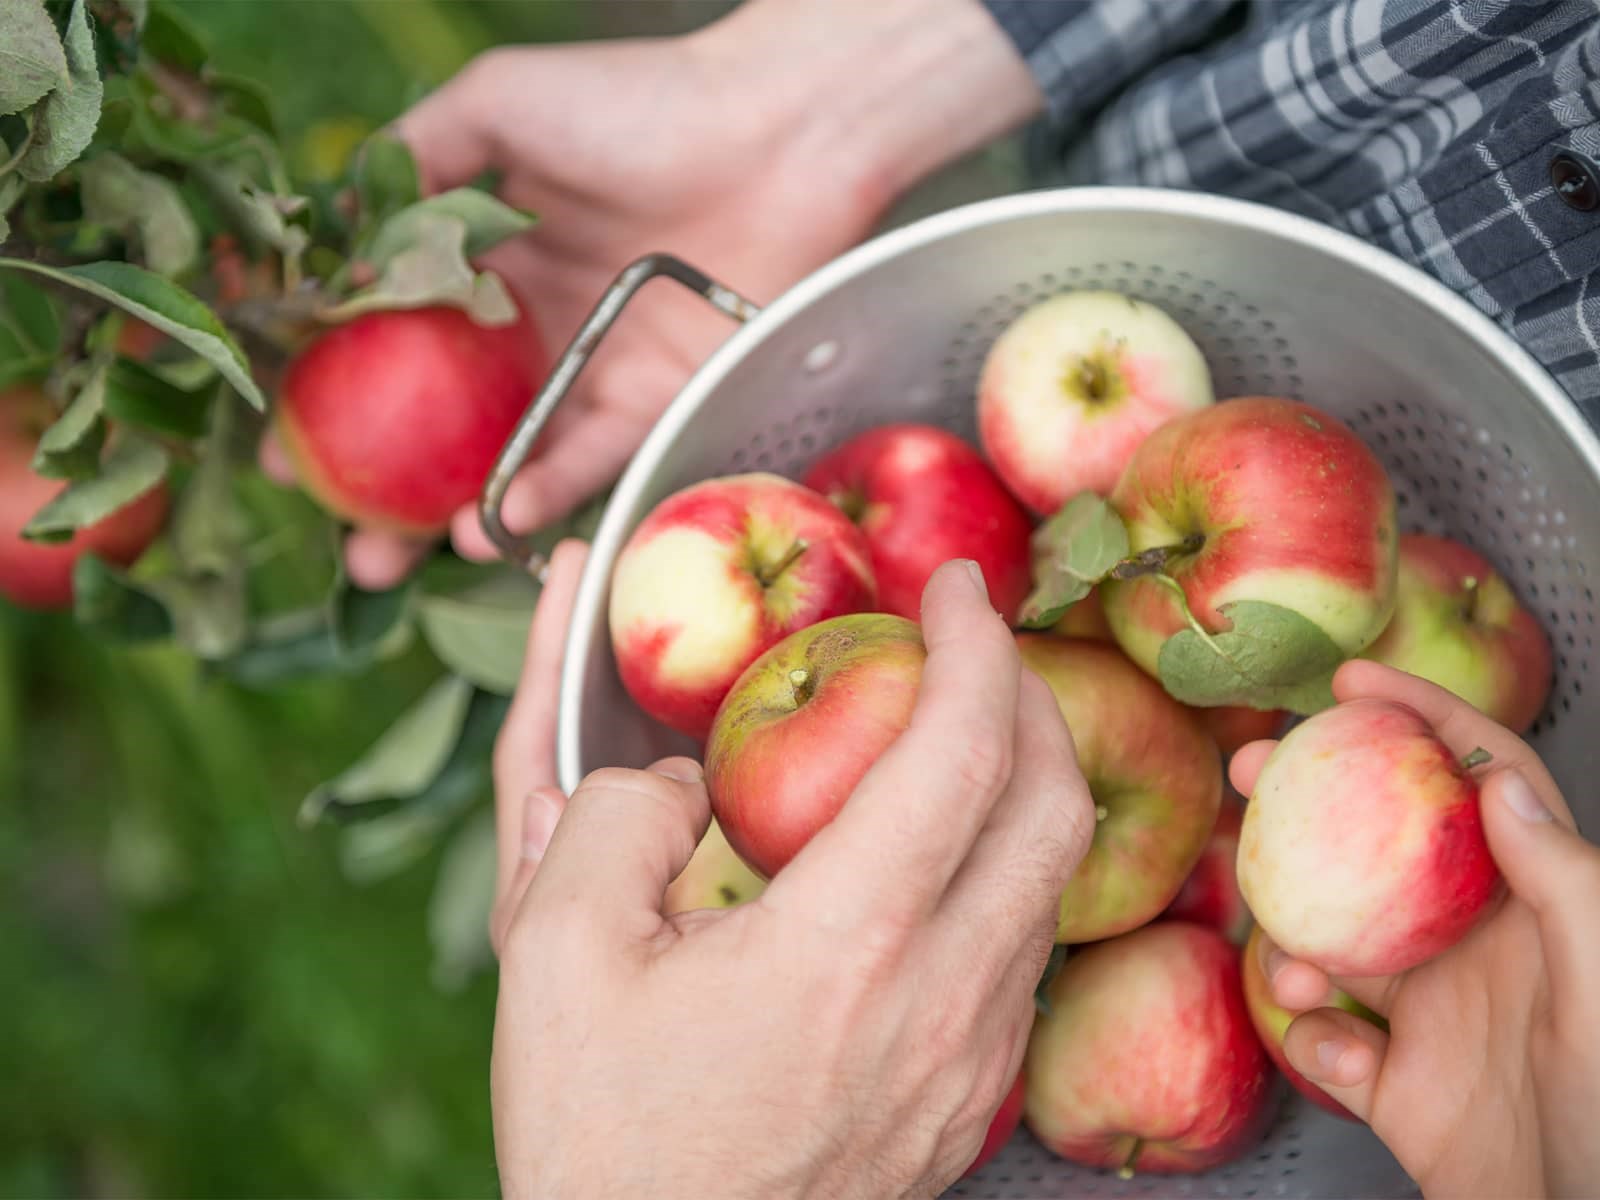 Hænder der samler æbler i spand